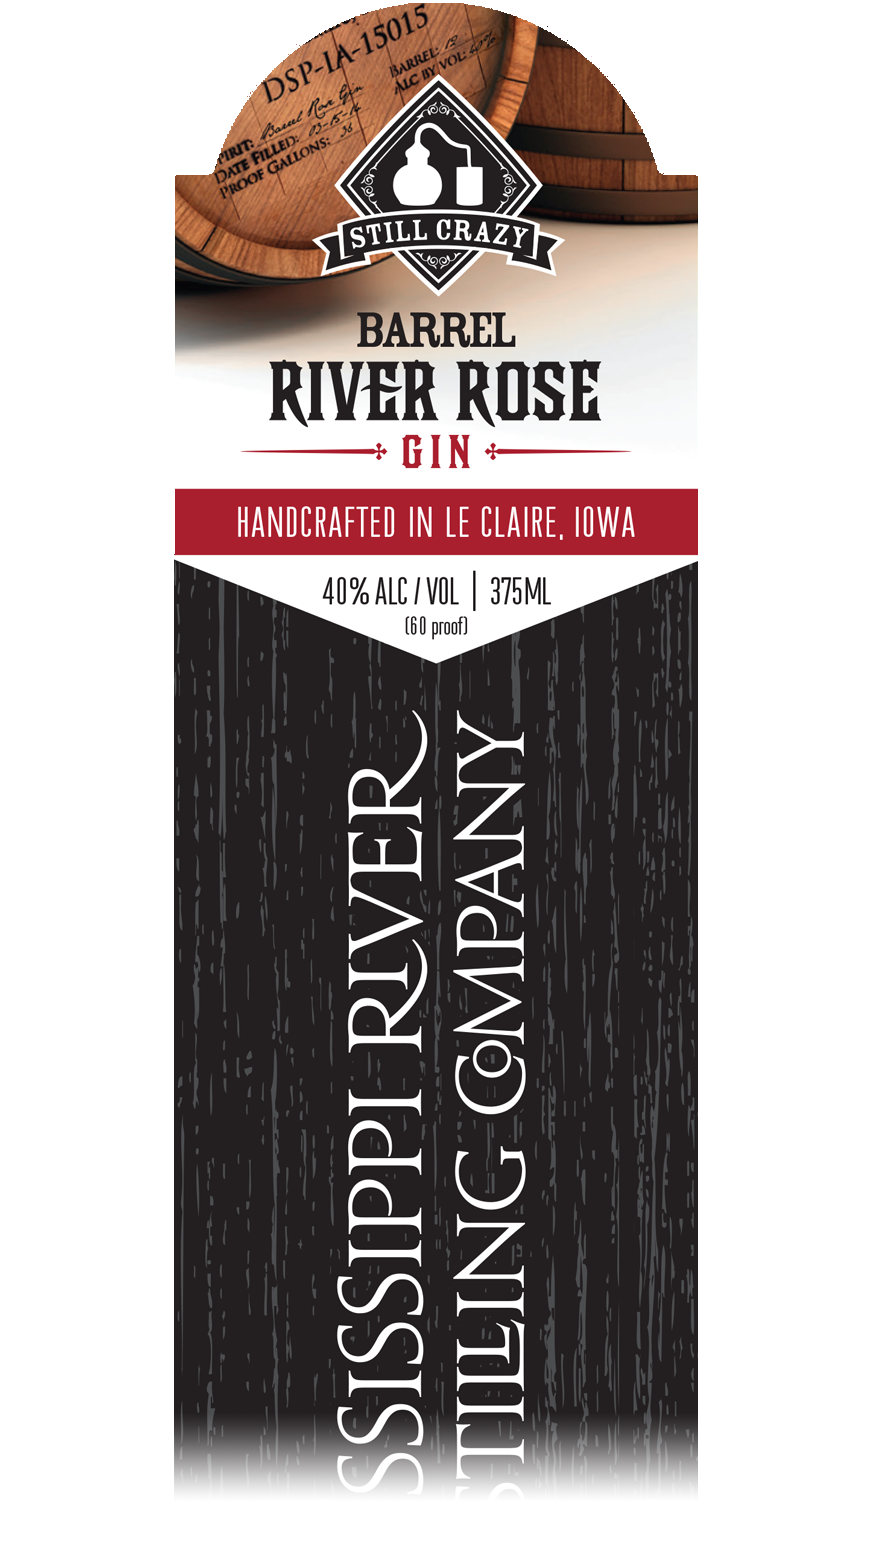 Barrel River Rose Gin label